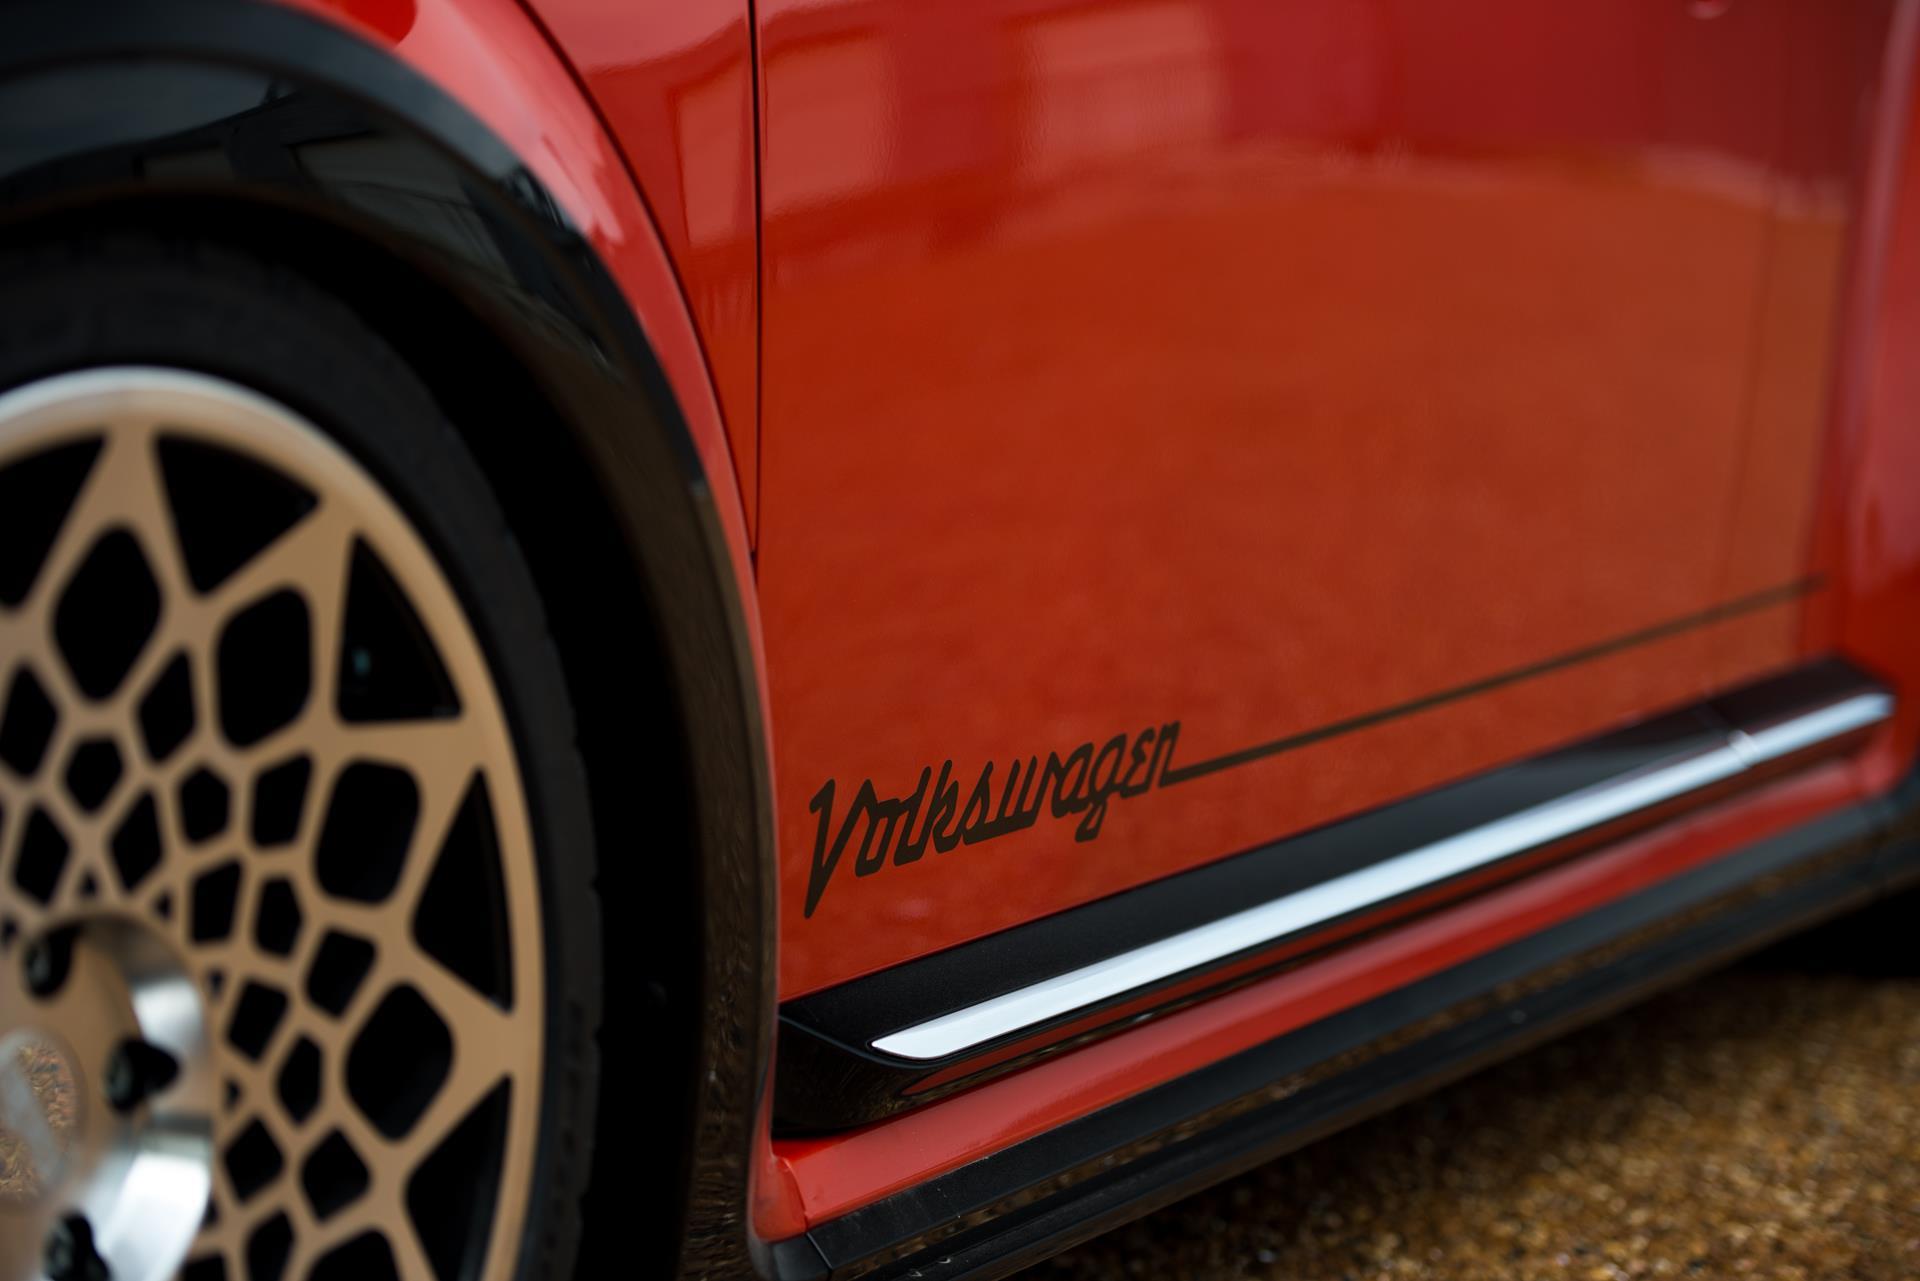 2017 Volkswagen Beetle Post Concept